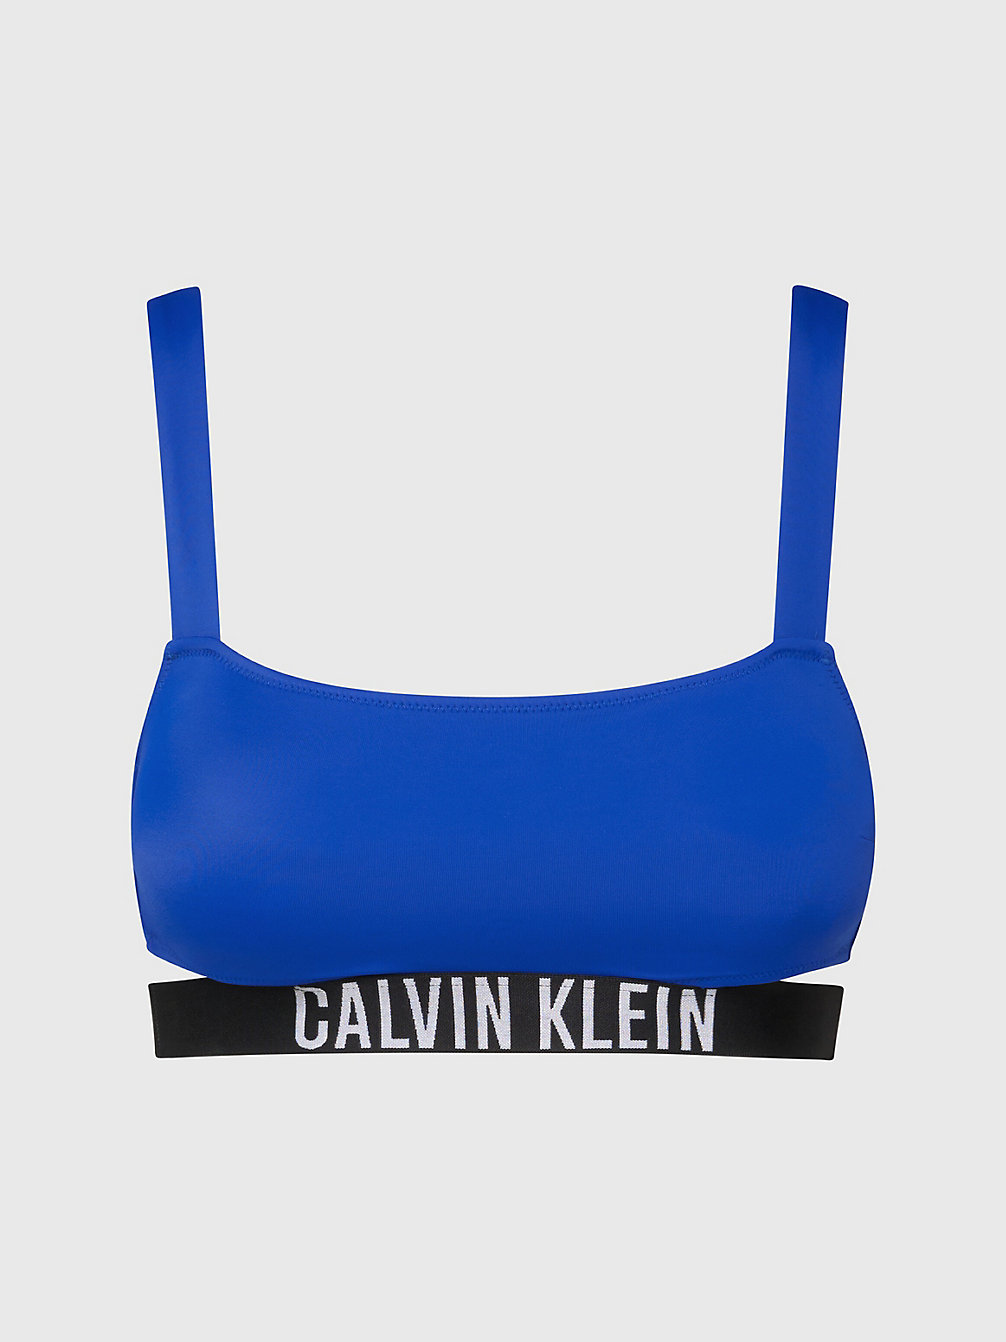 BISTRO BLUE > Bralette Bikini-Top - Intense Power > undefined Damen - Calvin Klein